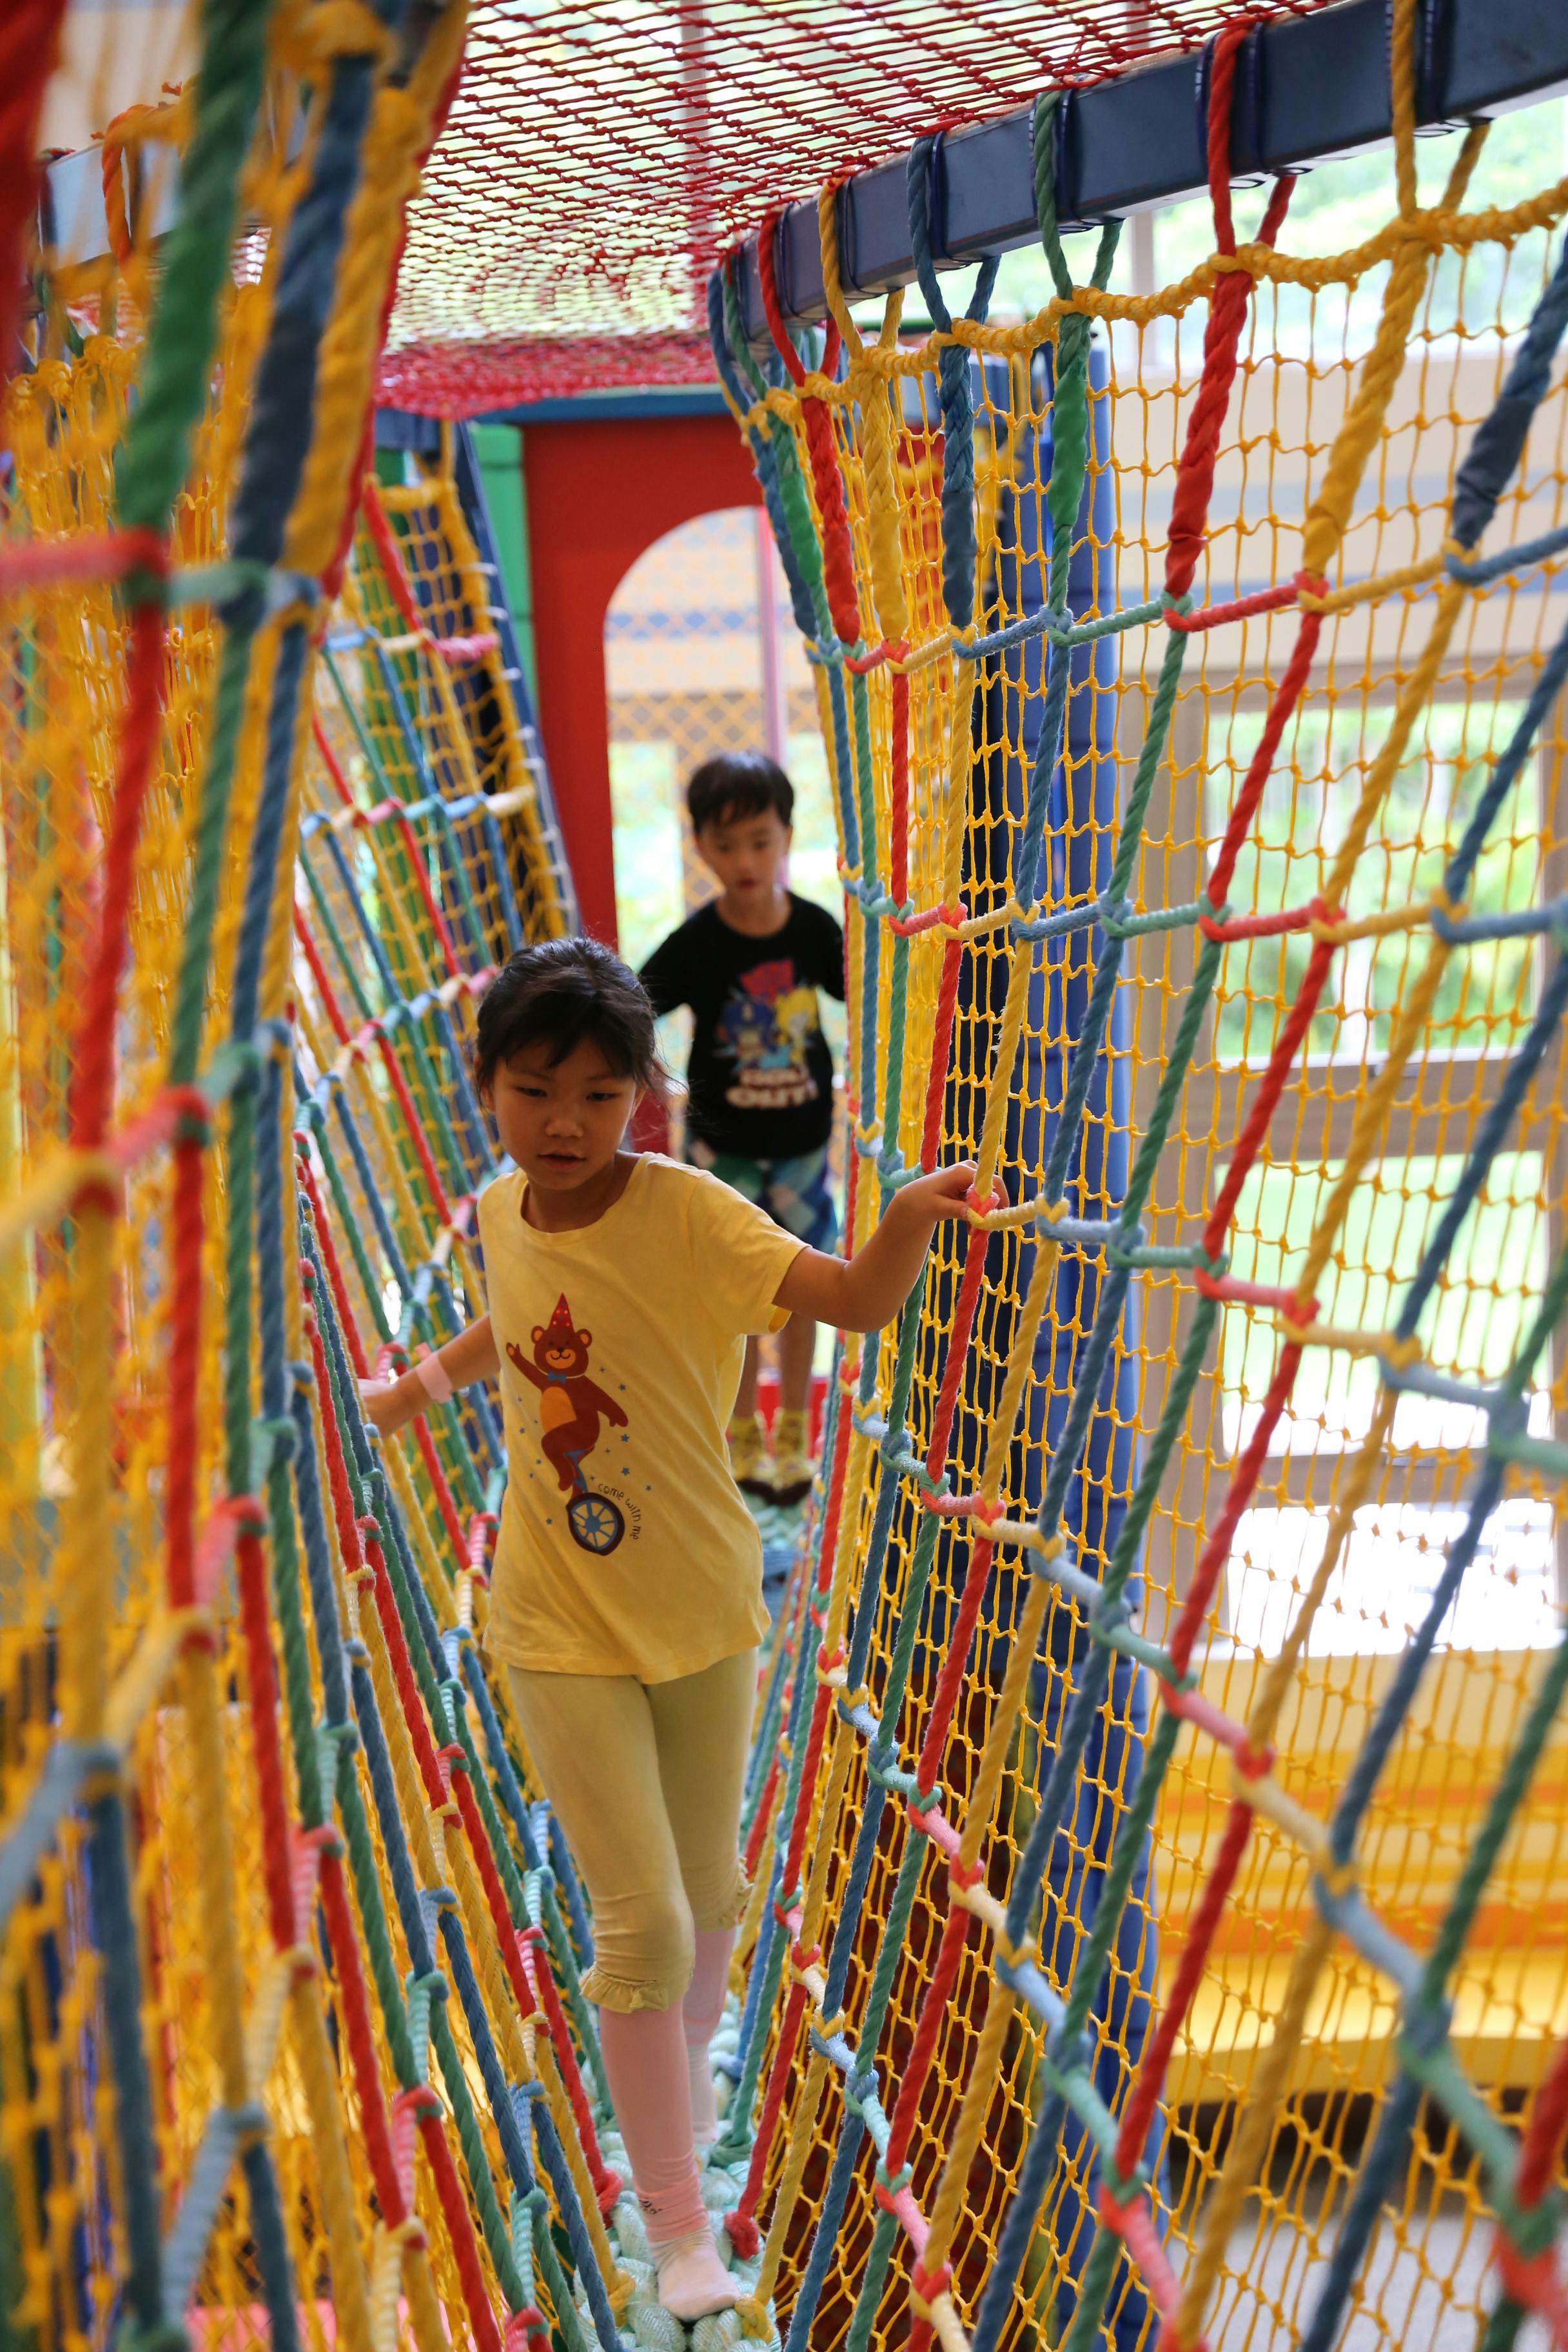 Children Walking on Rope Playground · Free Stock Photo